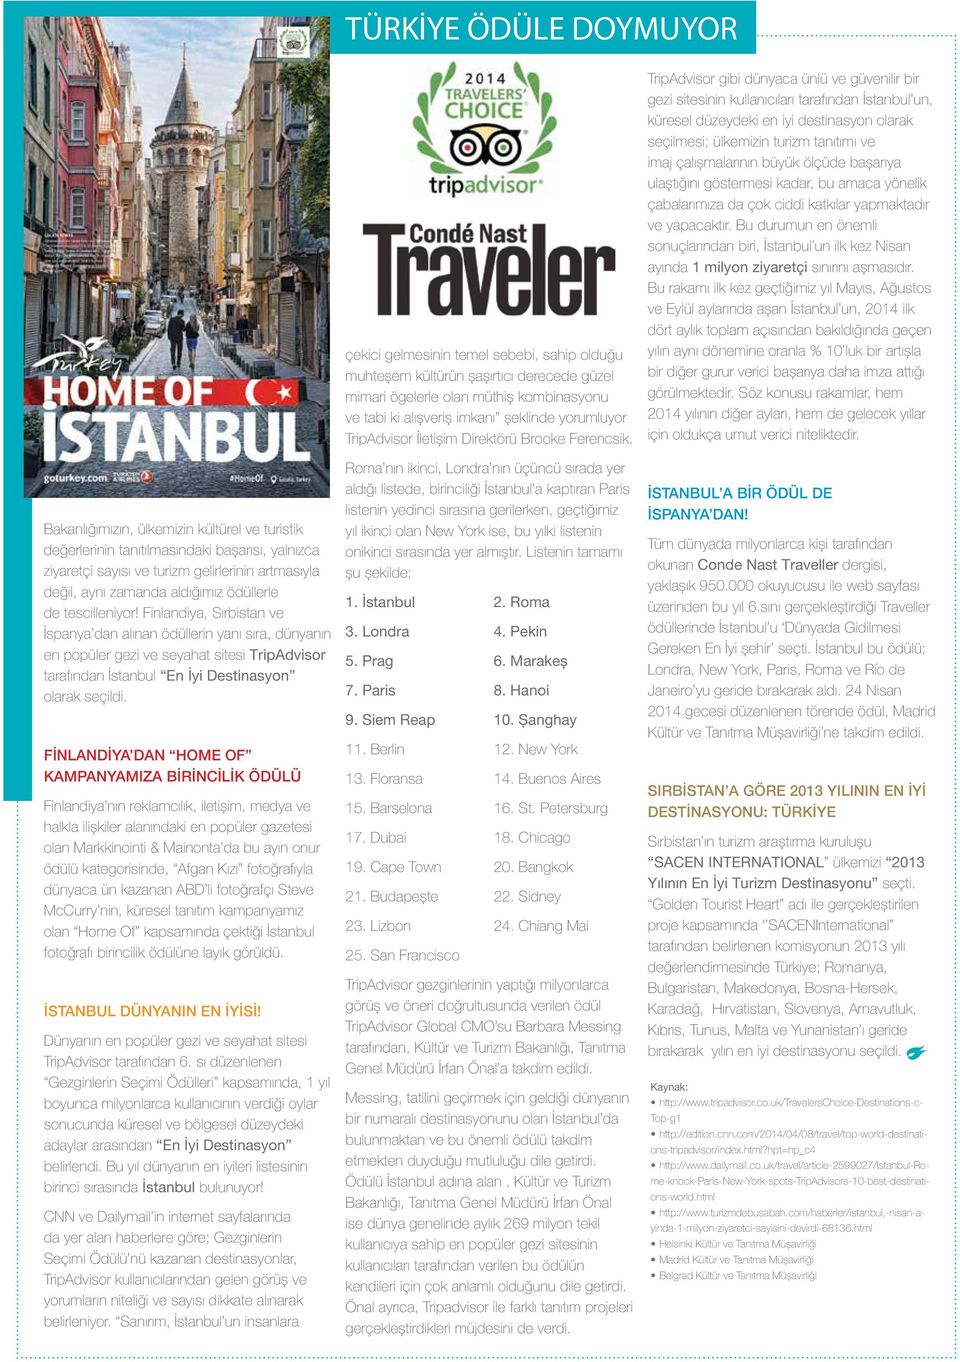 Finlandiya, Sırbistan ve İspanya dan alınan ödüllerin yanı sıra, dünyanın en popüler gezi ve seyahat sitesi TripAdvisor tarafından İstanbul En İyi Destinasyon olarak seçildi.